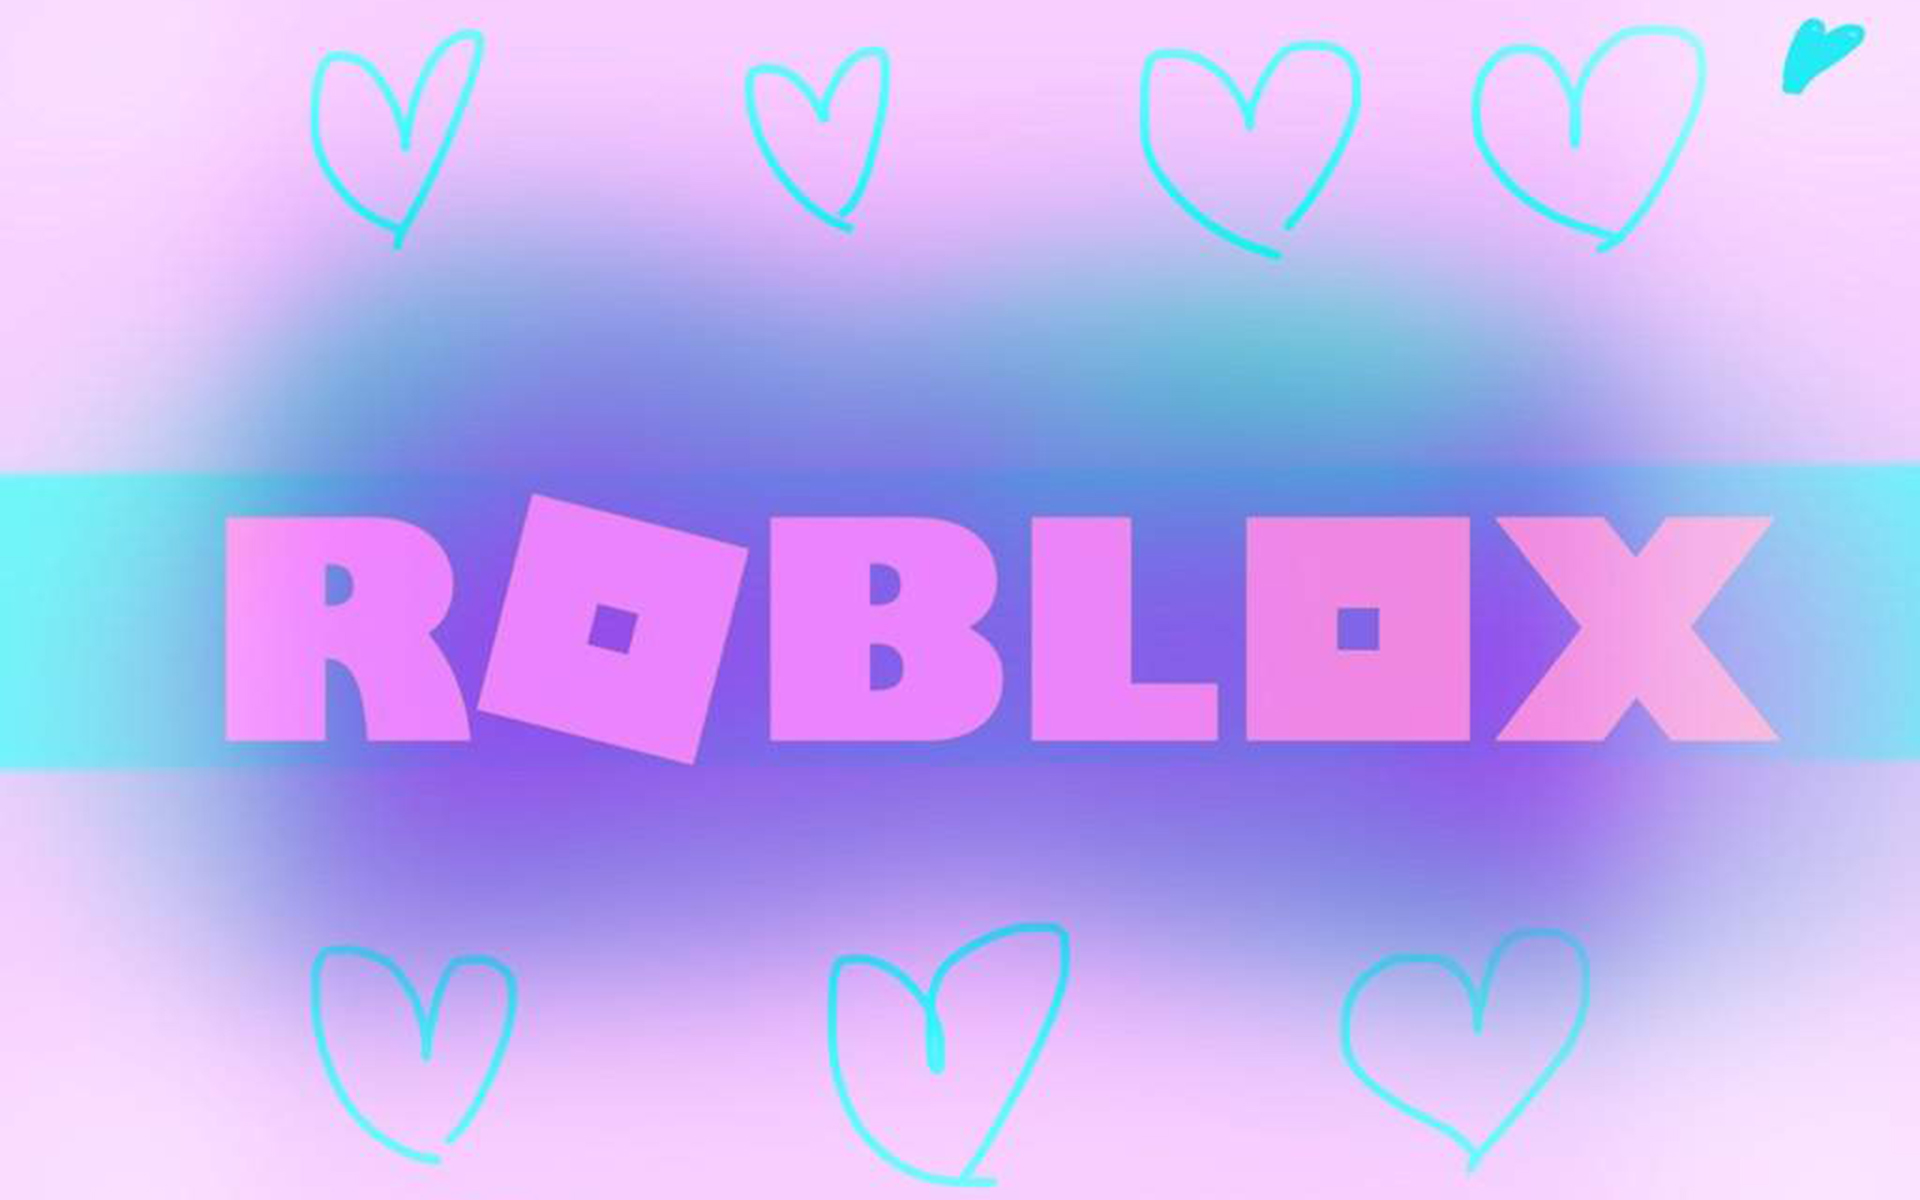 Roblox hình nền đáng yêu: Làm mới không gian của bạn với những hình nền Roblox đáng yêu và những kẻ hài hước đã trở nên quen thuộc. Hình nền Roblox với các hình ảnh tuyệt đẹp, đầy sáng tạo và màu sắc kết hợp hoàn hảo, đủ sức làm cho bạn bị nghiện vào chúng ngay từ lần đầu tiên. Translation: Cute Roblox wallpaper/background: Refresh your space with cute Roblox wallpapers and funny characters that have become familiar. Roblox wallpapers with beautiful images, full of creativity and perfectly combined colors that are enough to make you addicted to them from the first time.